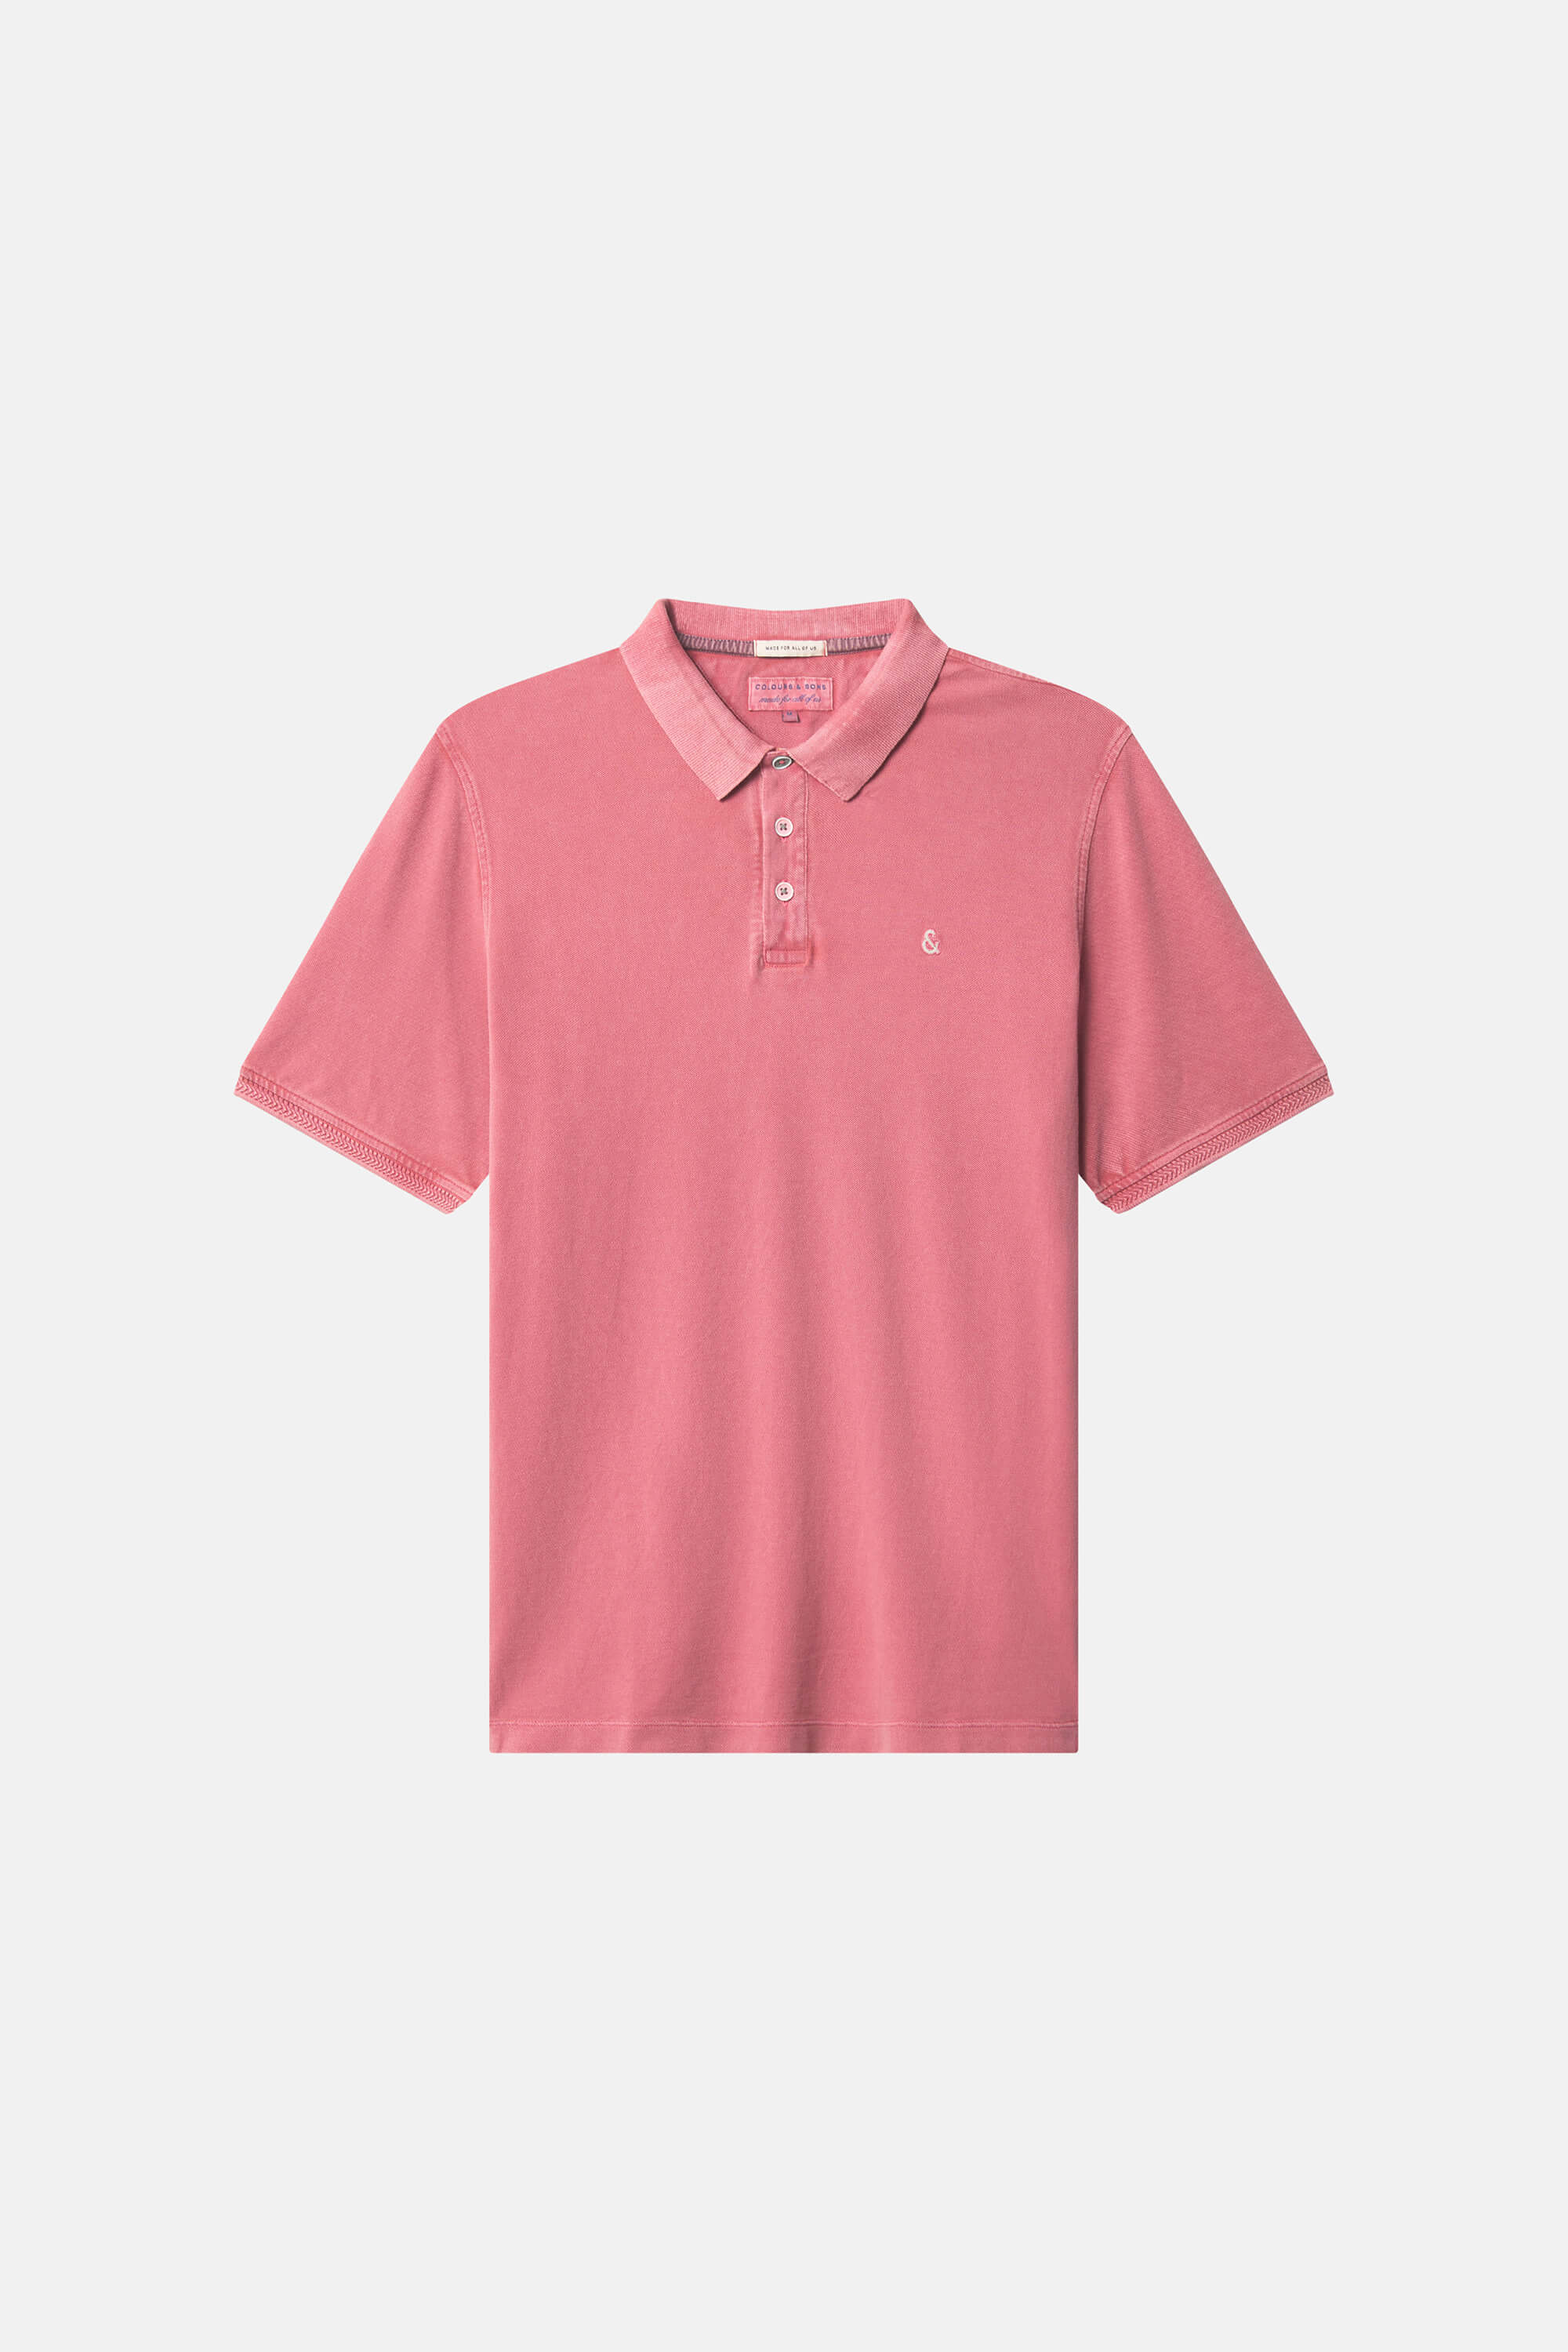 Herren Polo-Shirt, rosa, 100% Baumwolle von Colours & Sons